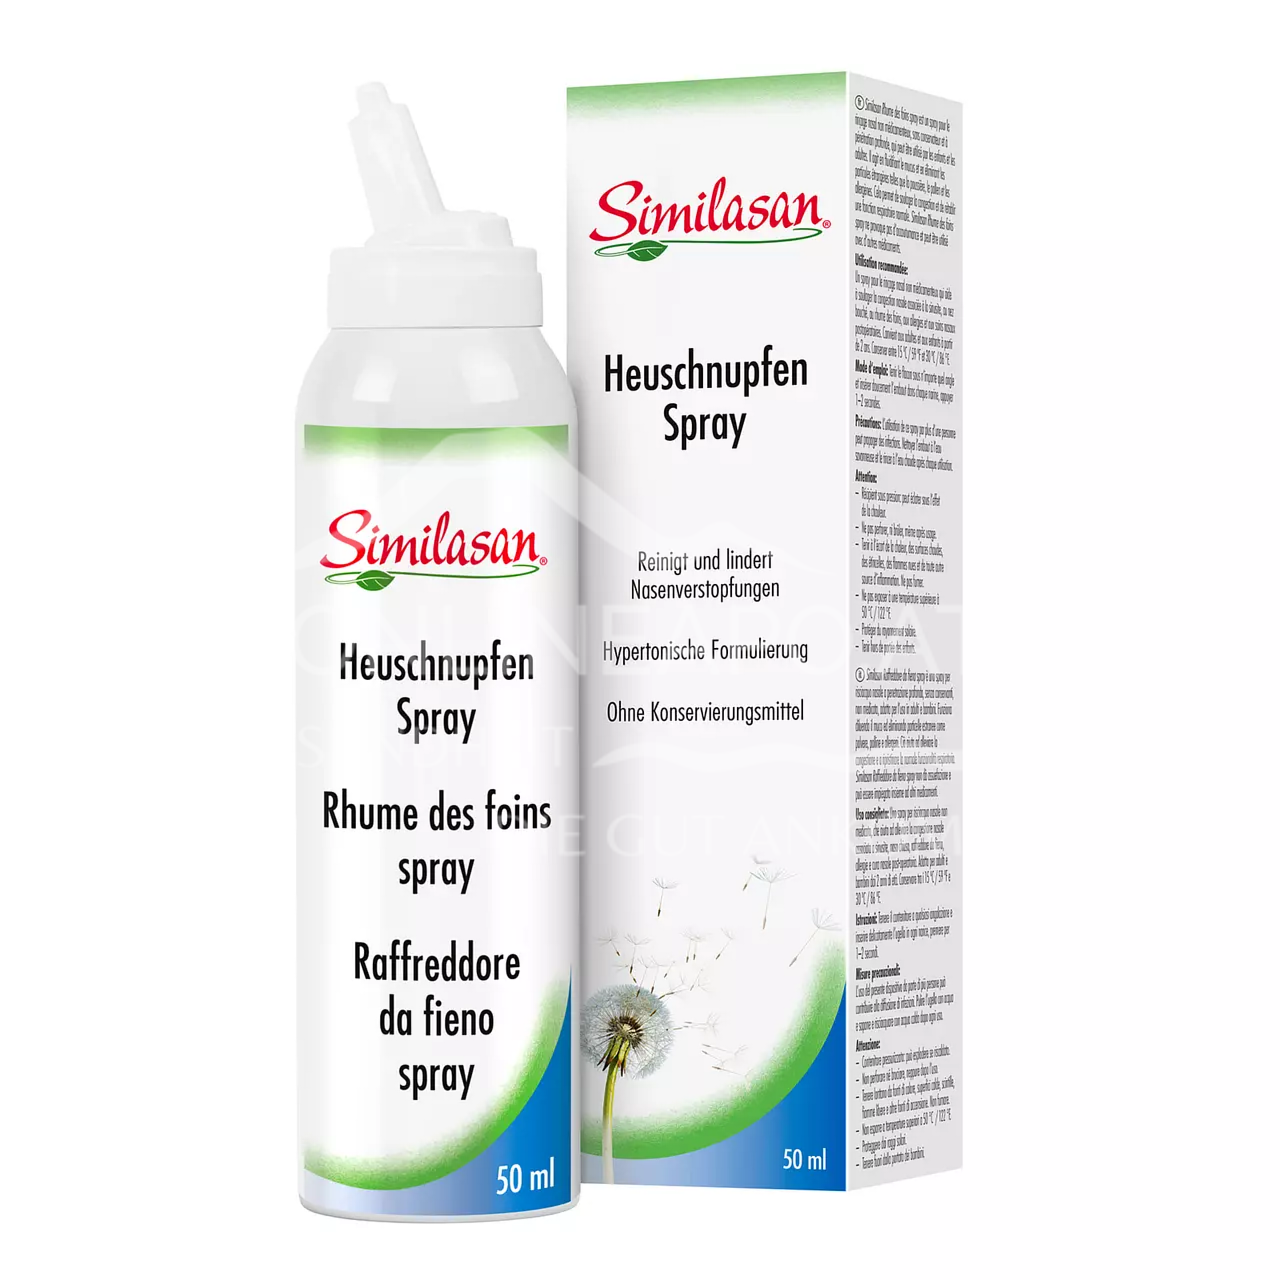 Similasan Heuschnupfen Spray